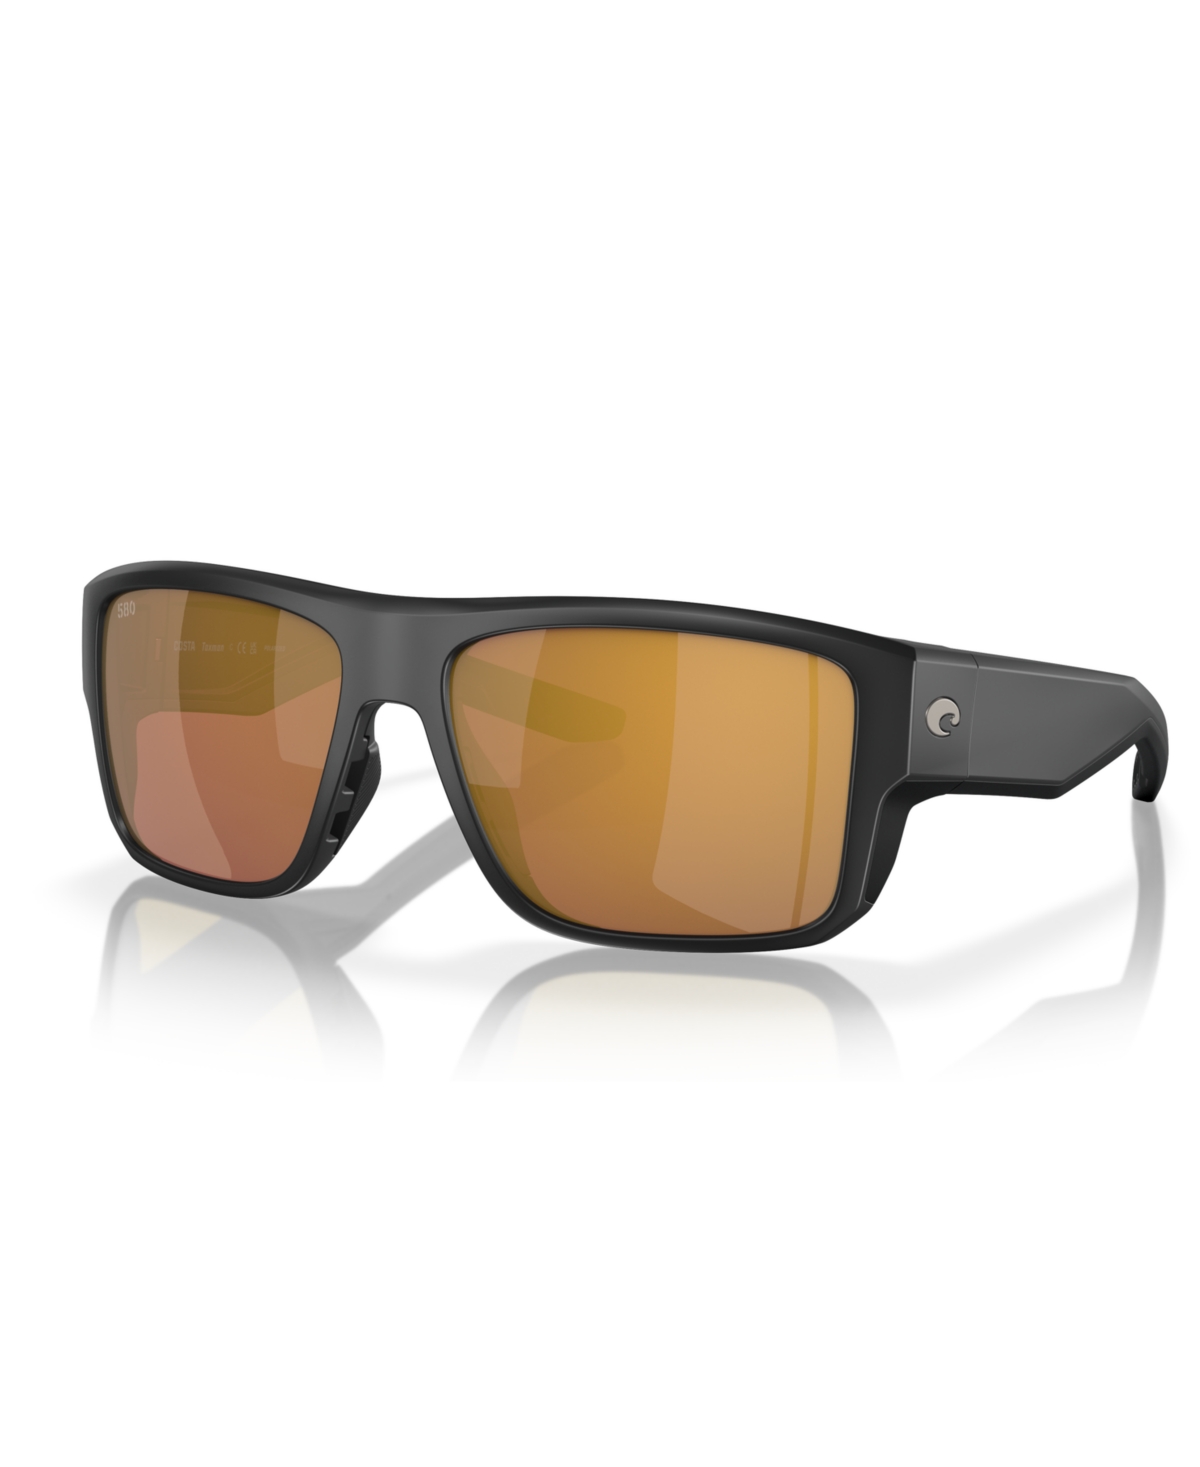 Men's Polarized Sunglasses, Taxman 6S9116 - Matte Black, Blue